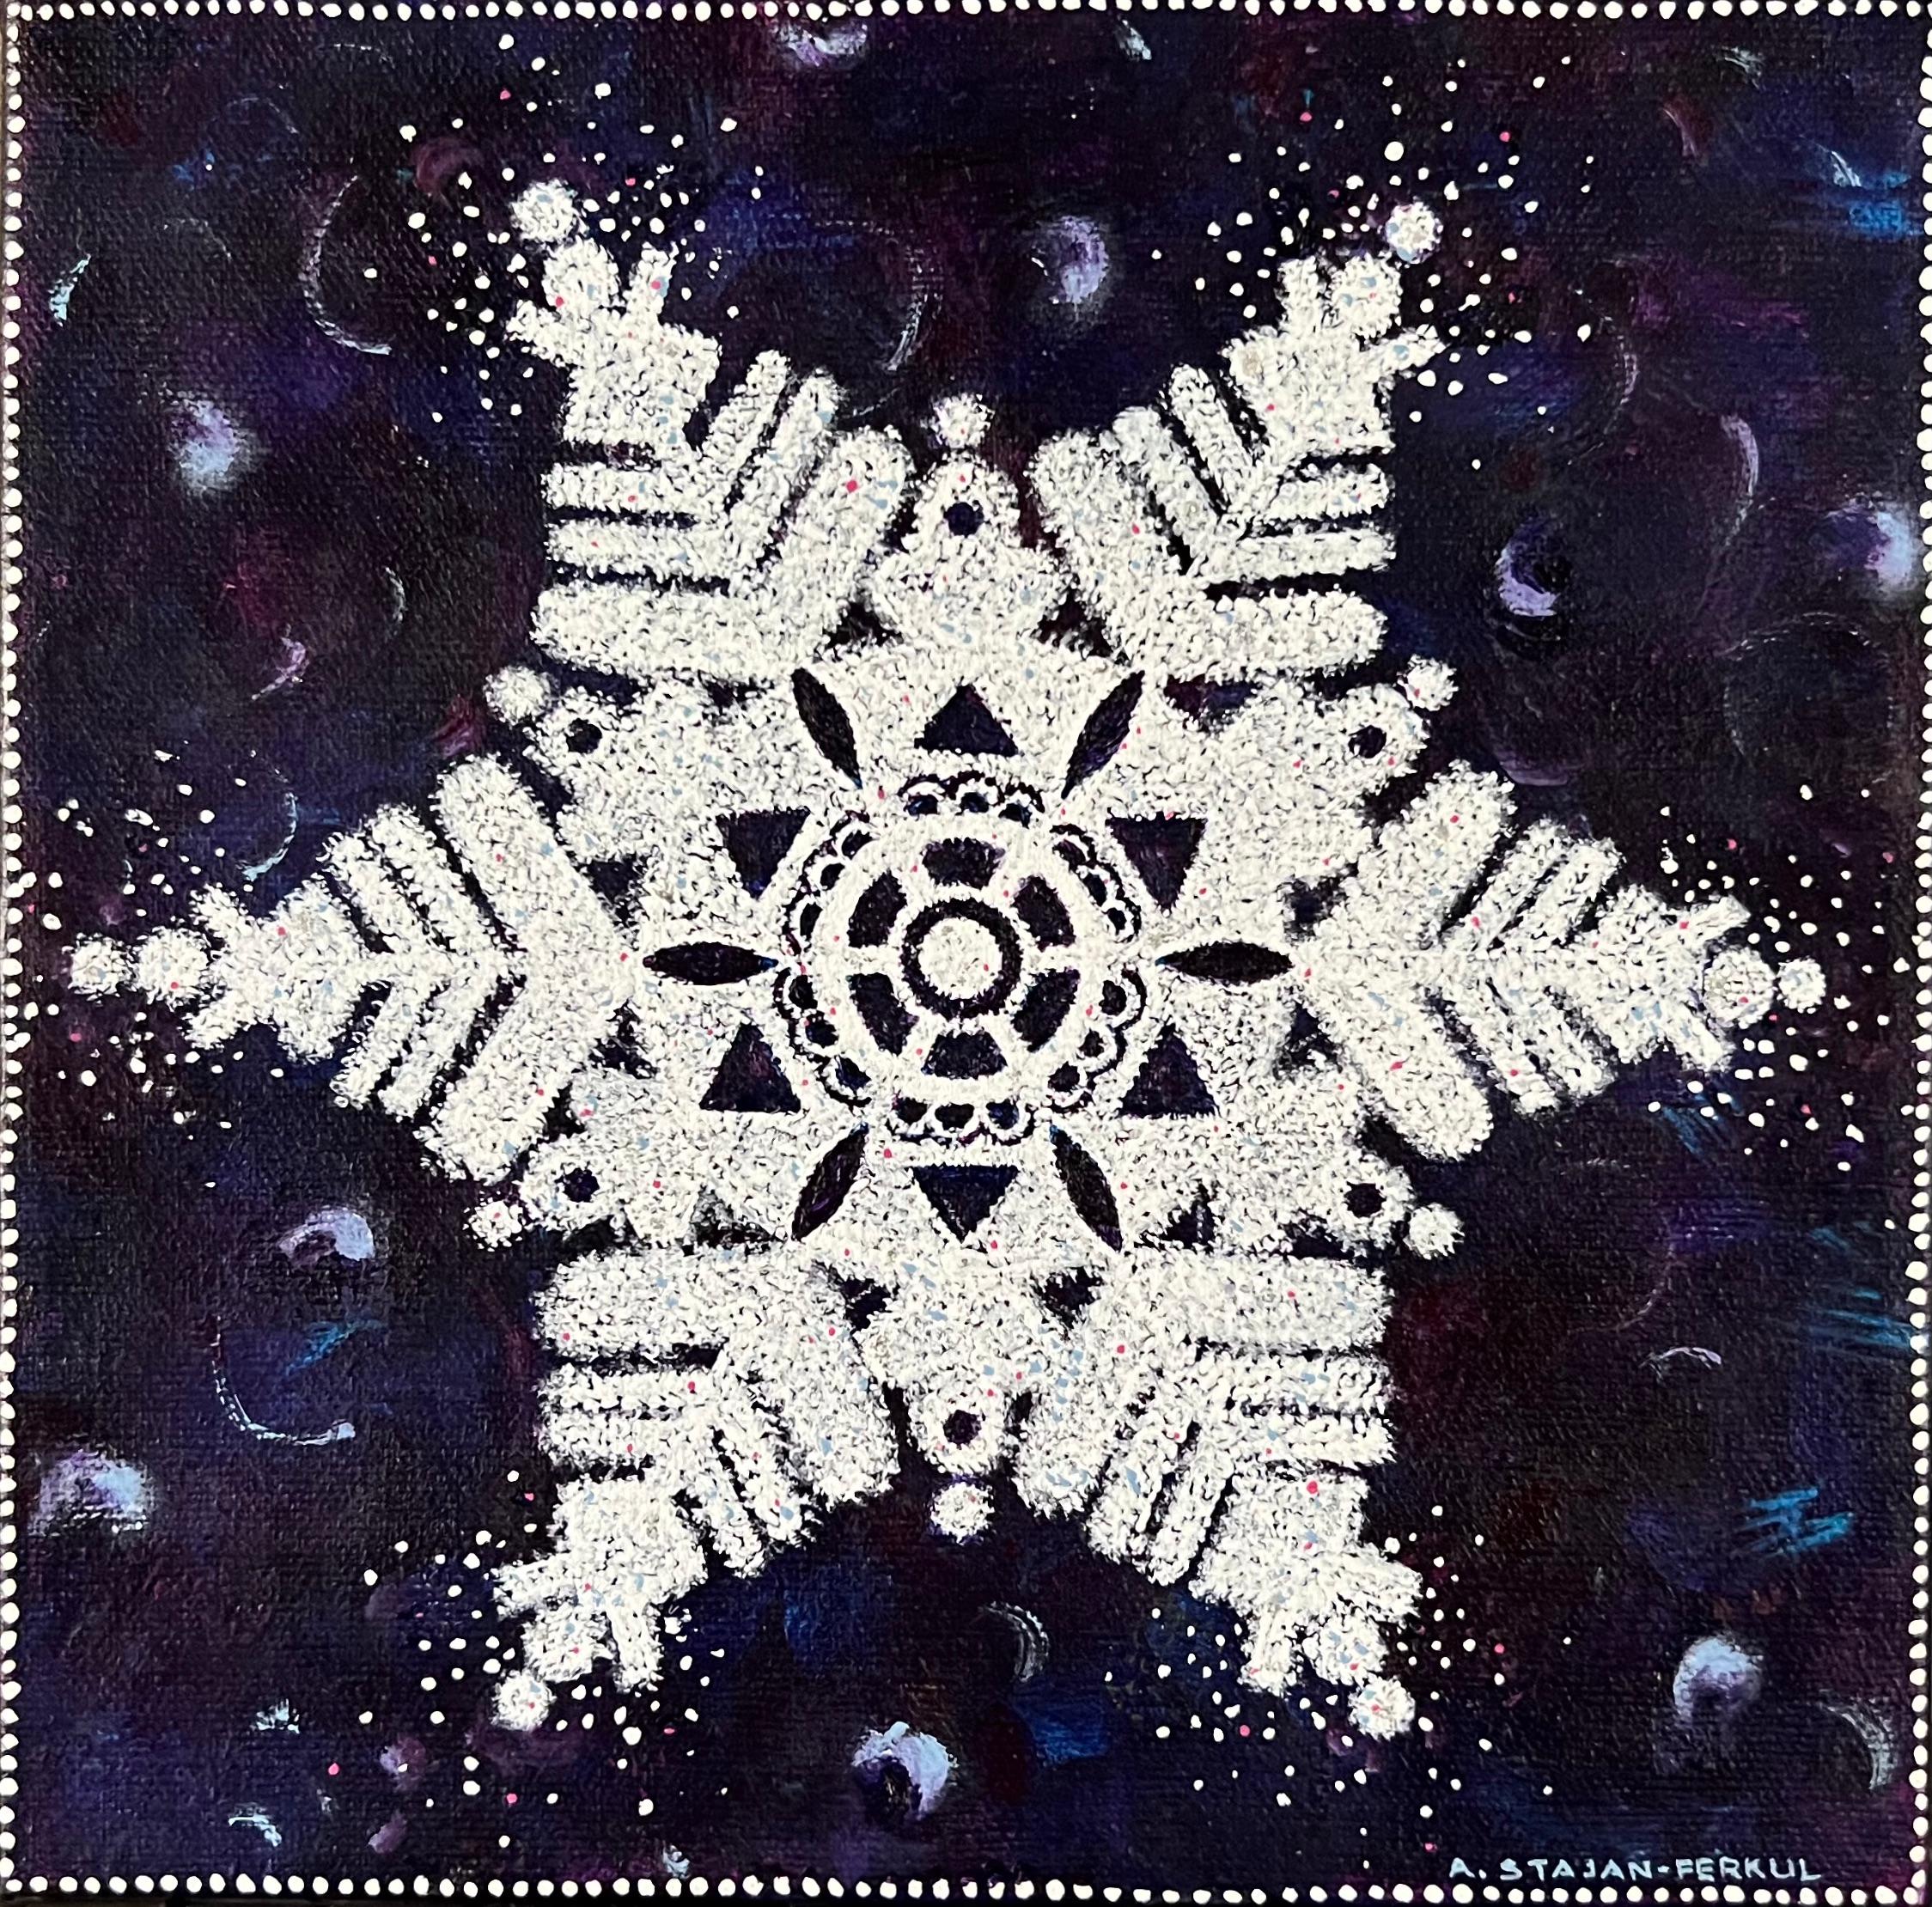 Landscape Painting Andrea Stajan-Ferkul - Flacon de neige dans le ciel, 8"x8", bleu, blanc, hiver, neige, étoile, peinture de Noël